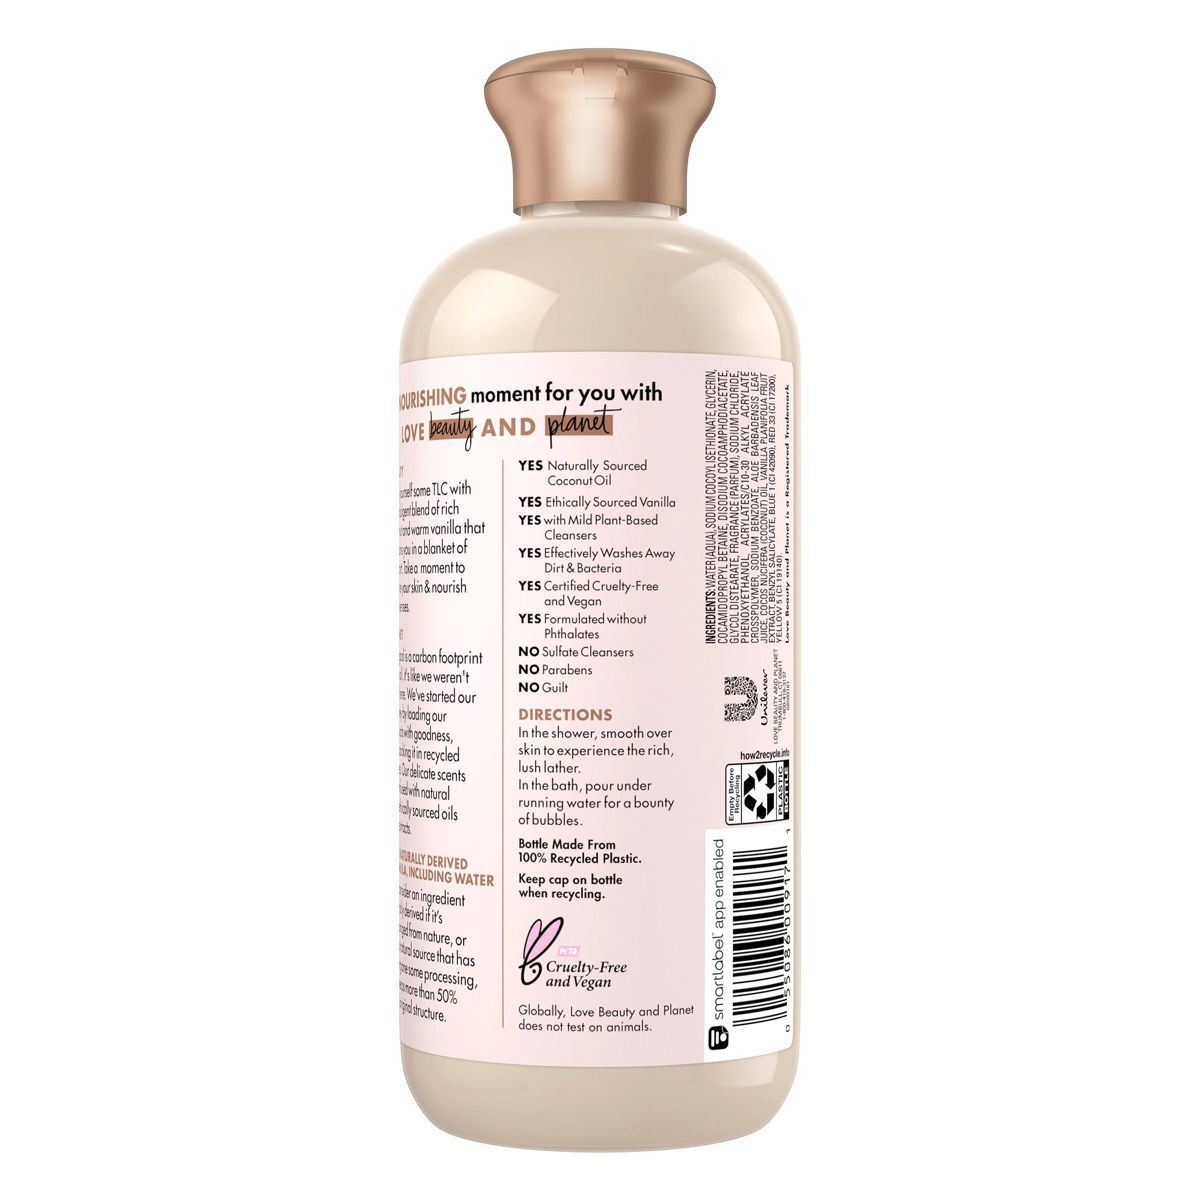 Beloved Coconut & Warm Vanilla Shower & Bath Gel Body Wash - 11.8 fl oz | Target